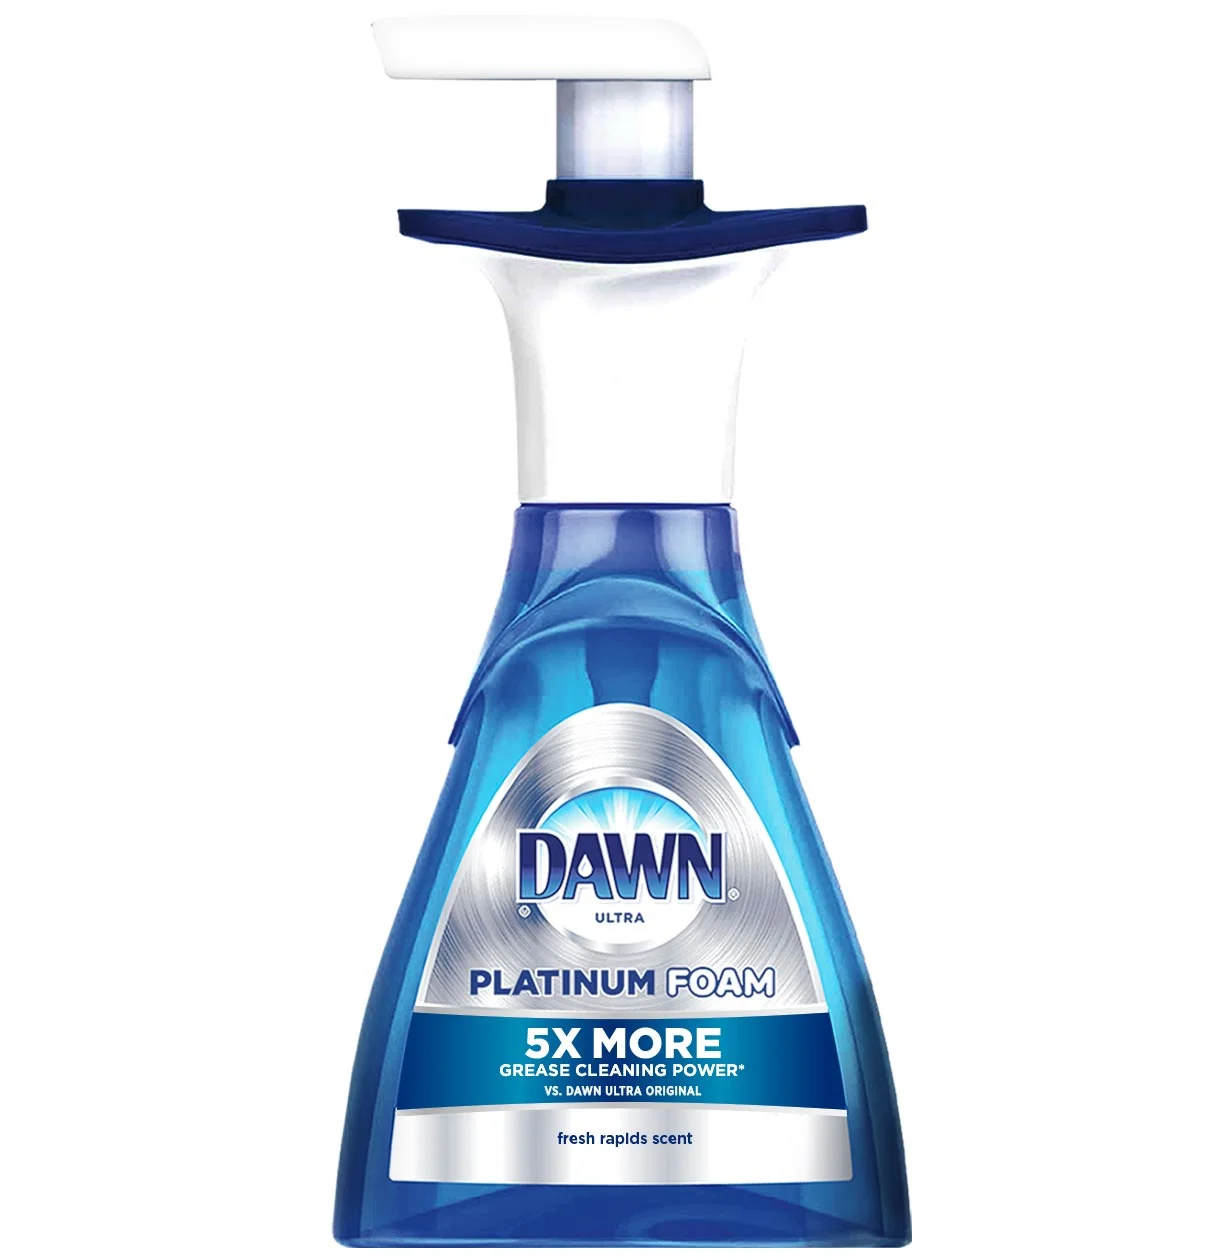 Dawn Platinum Foam